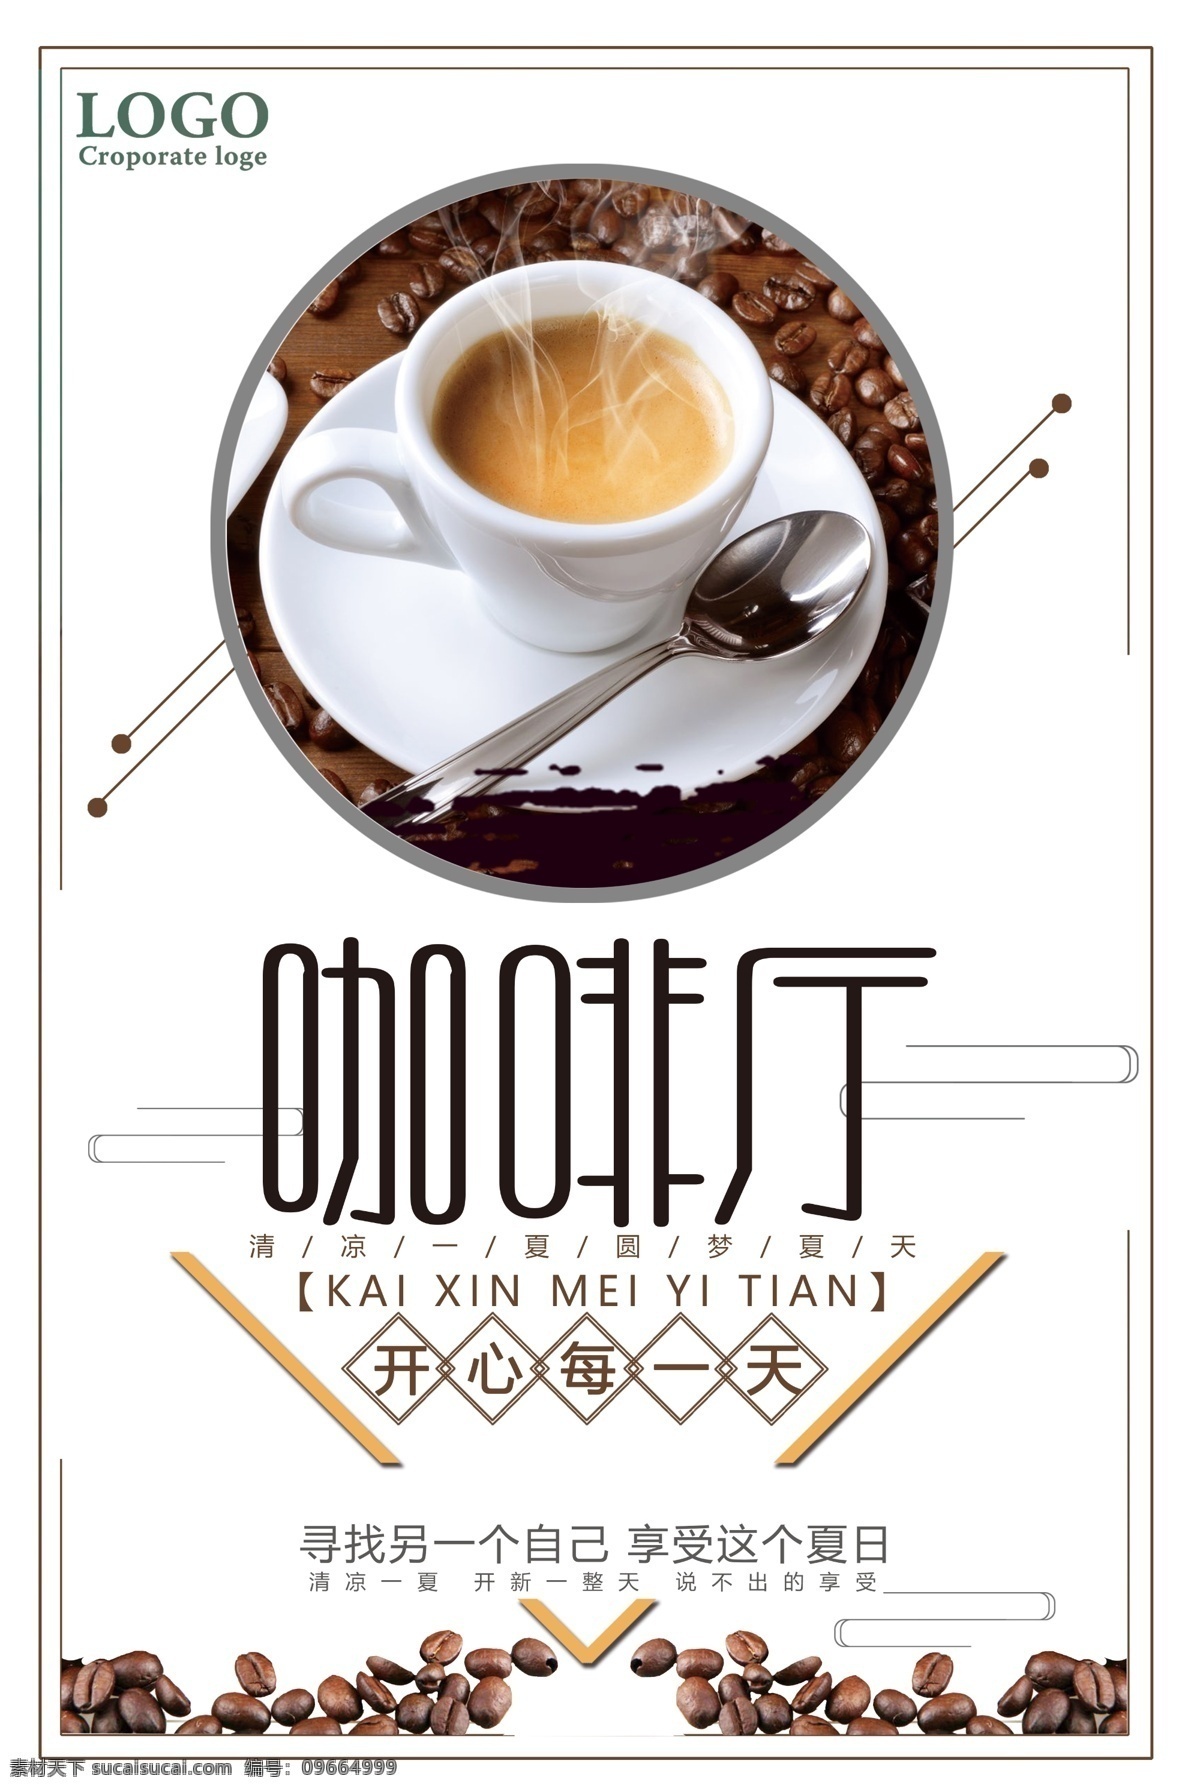 咖啡厅海报 咖啡 热饮海报 下午茶 慢时光 咖啡海报 进口咖啡 一杯咖啡 分层